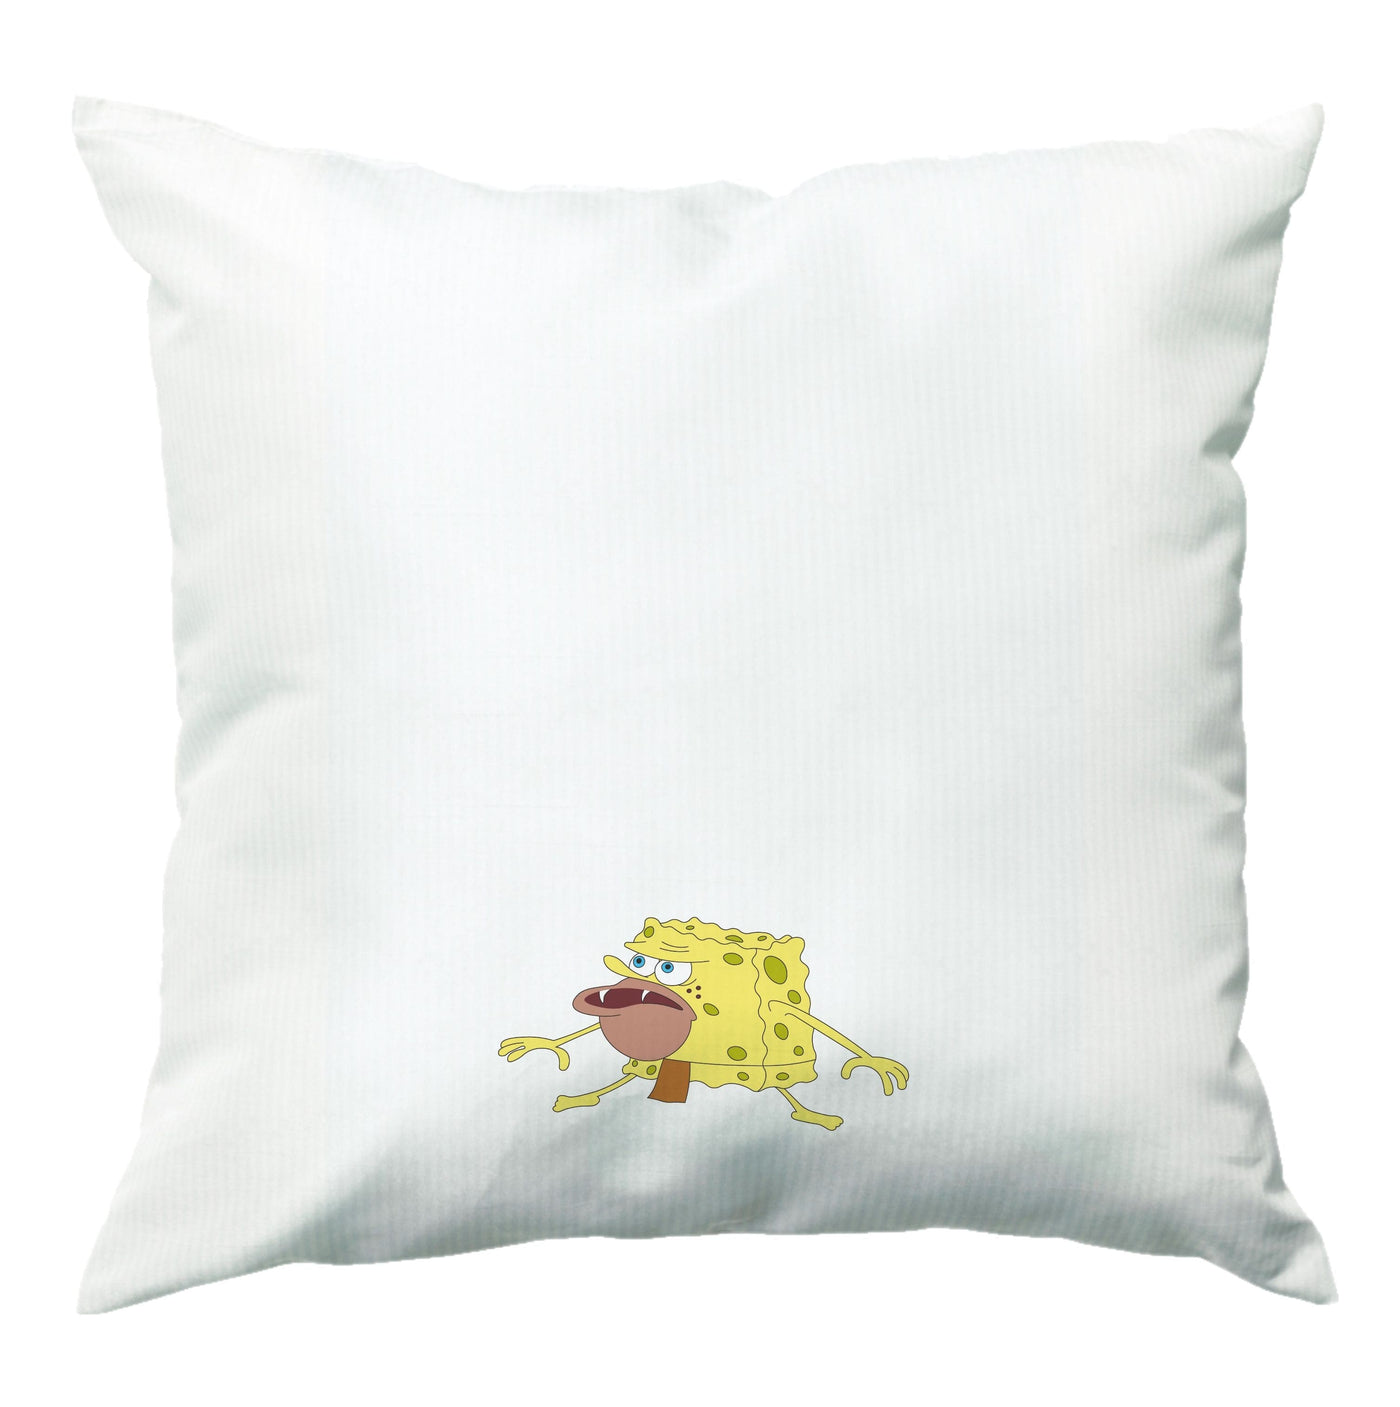 Caveman - Spongebob Cushion